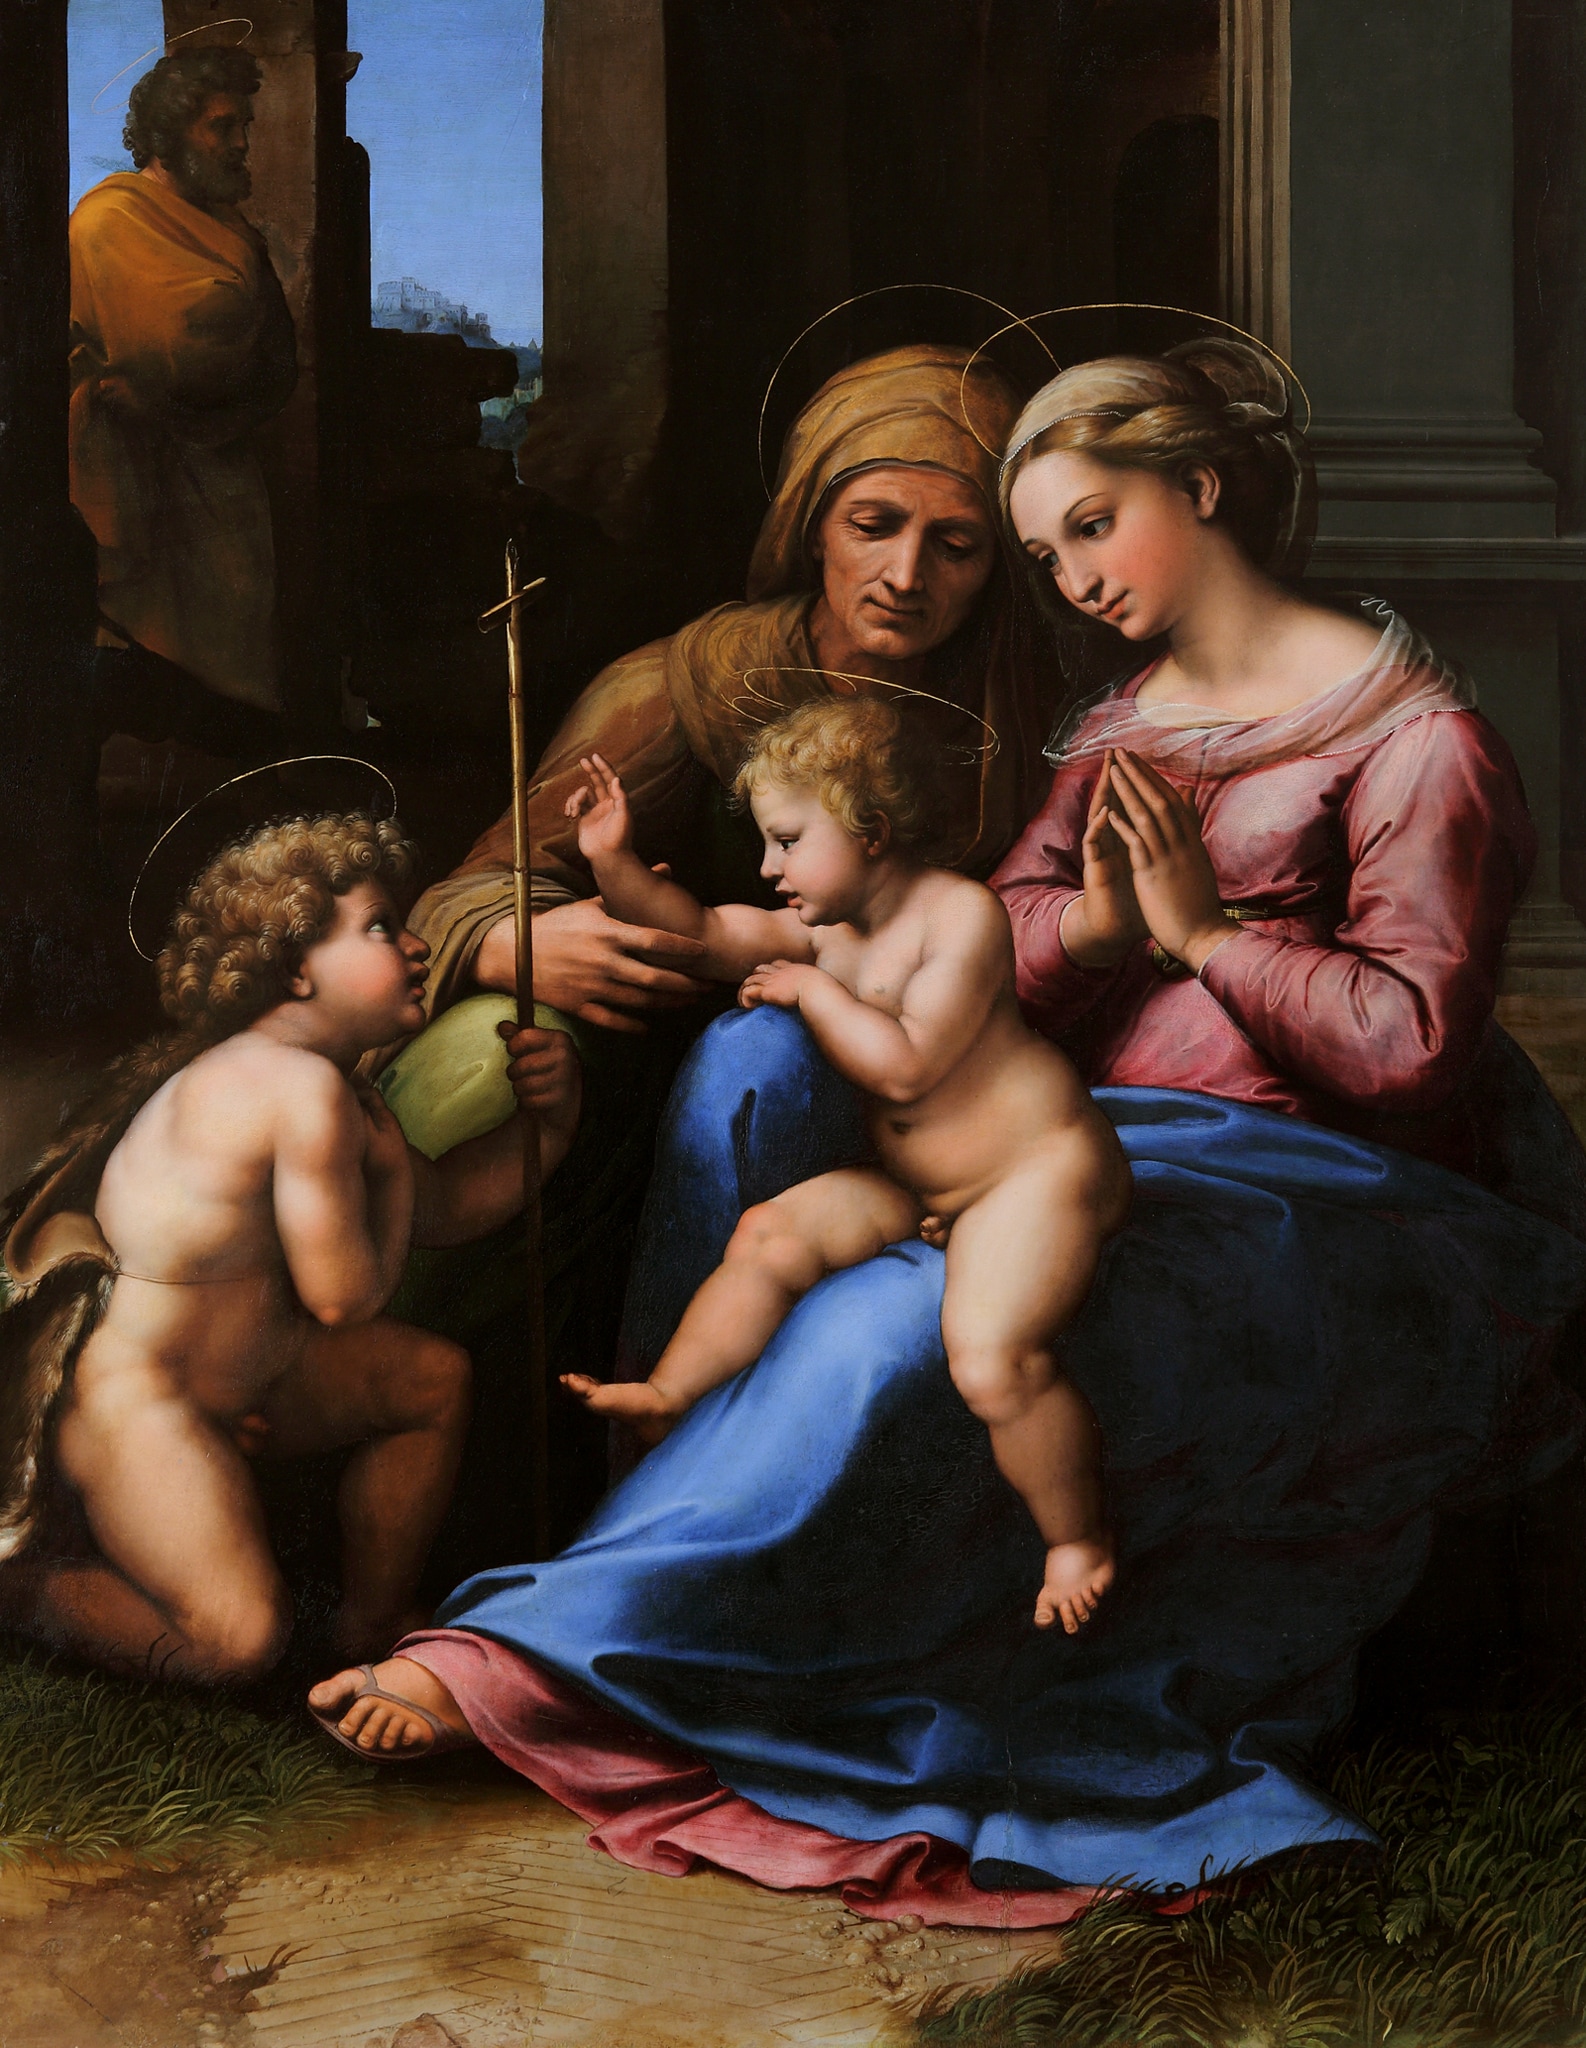 Raffaello Sanzio e aiuti, Madonna del Divino Amore, 1516 ca., olio su tavola, 140x109cm. Il dipinto, in passato considerato uno dei più preziosi della collezione Farnese, fu declassato a fine '800 come opera di bottega; solo dopo un accurato restauro, ha rivelato la mano di Raffaello (1483-1520). Acquistato dal cardinale Alessandro Farnese nel 1565, fu poi trasferito a Parma e nel 1734 giunse a Napoli con Carlo III.